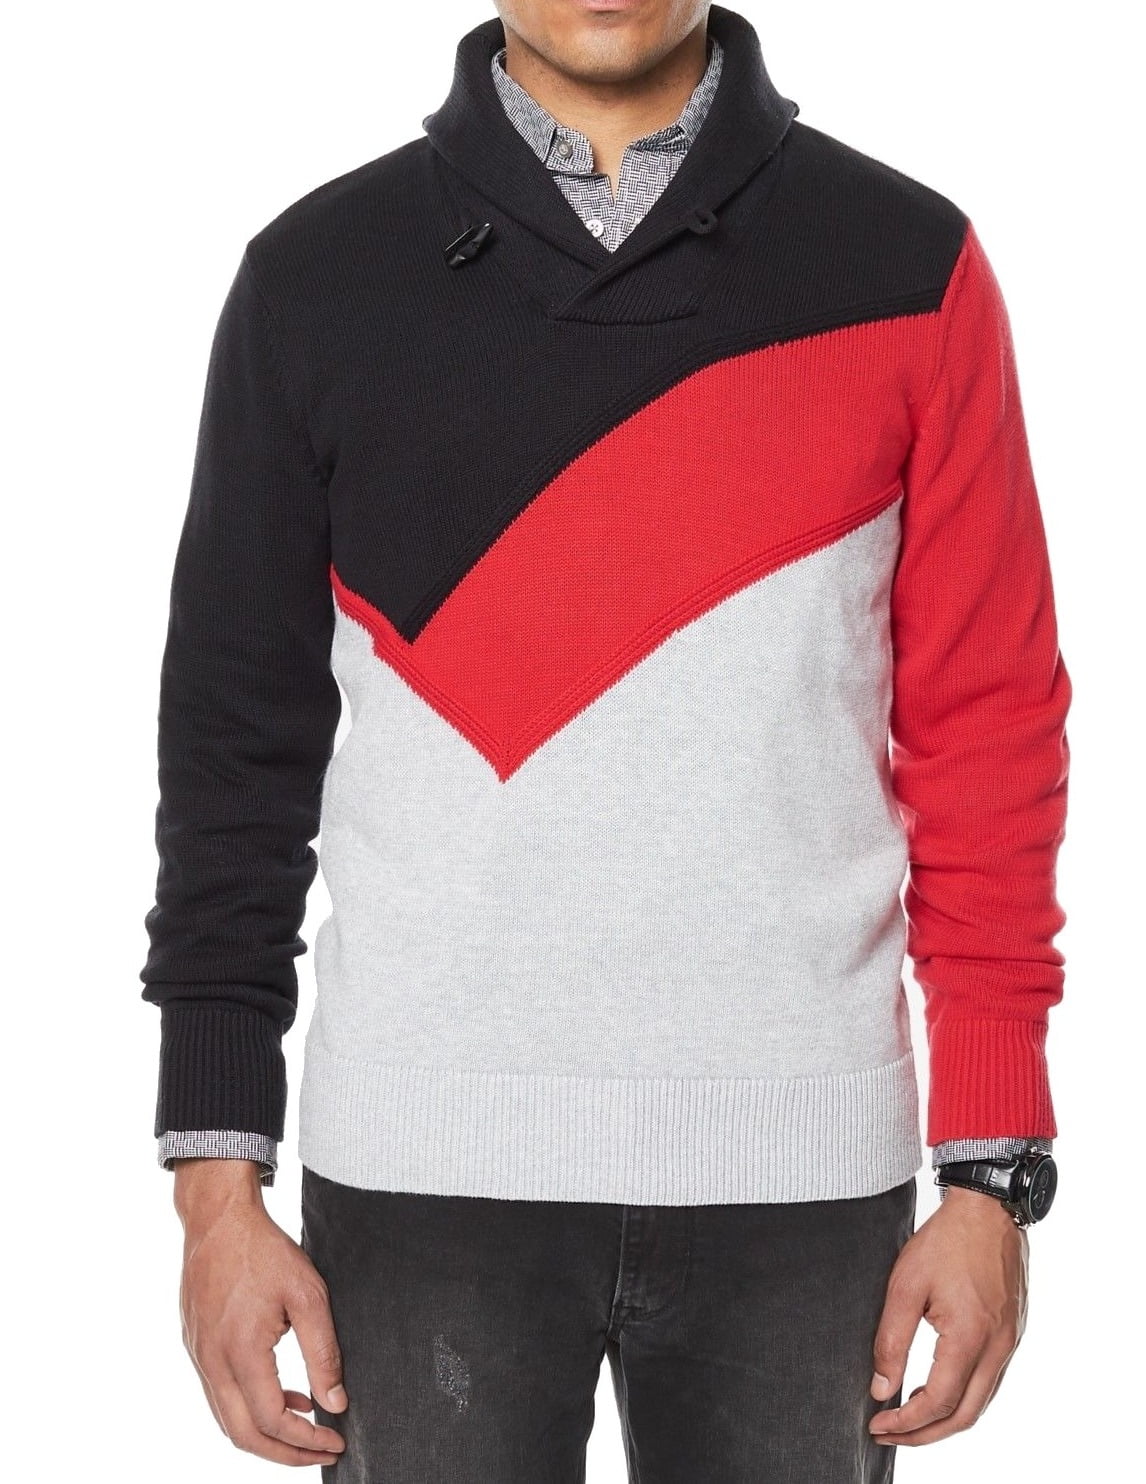 Sean John Sweaters - Sean John Mens Shawl Collar Colorblock Sweater ...